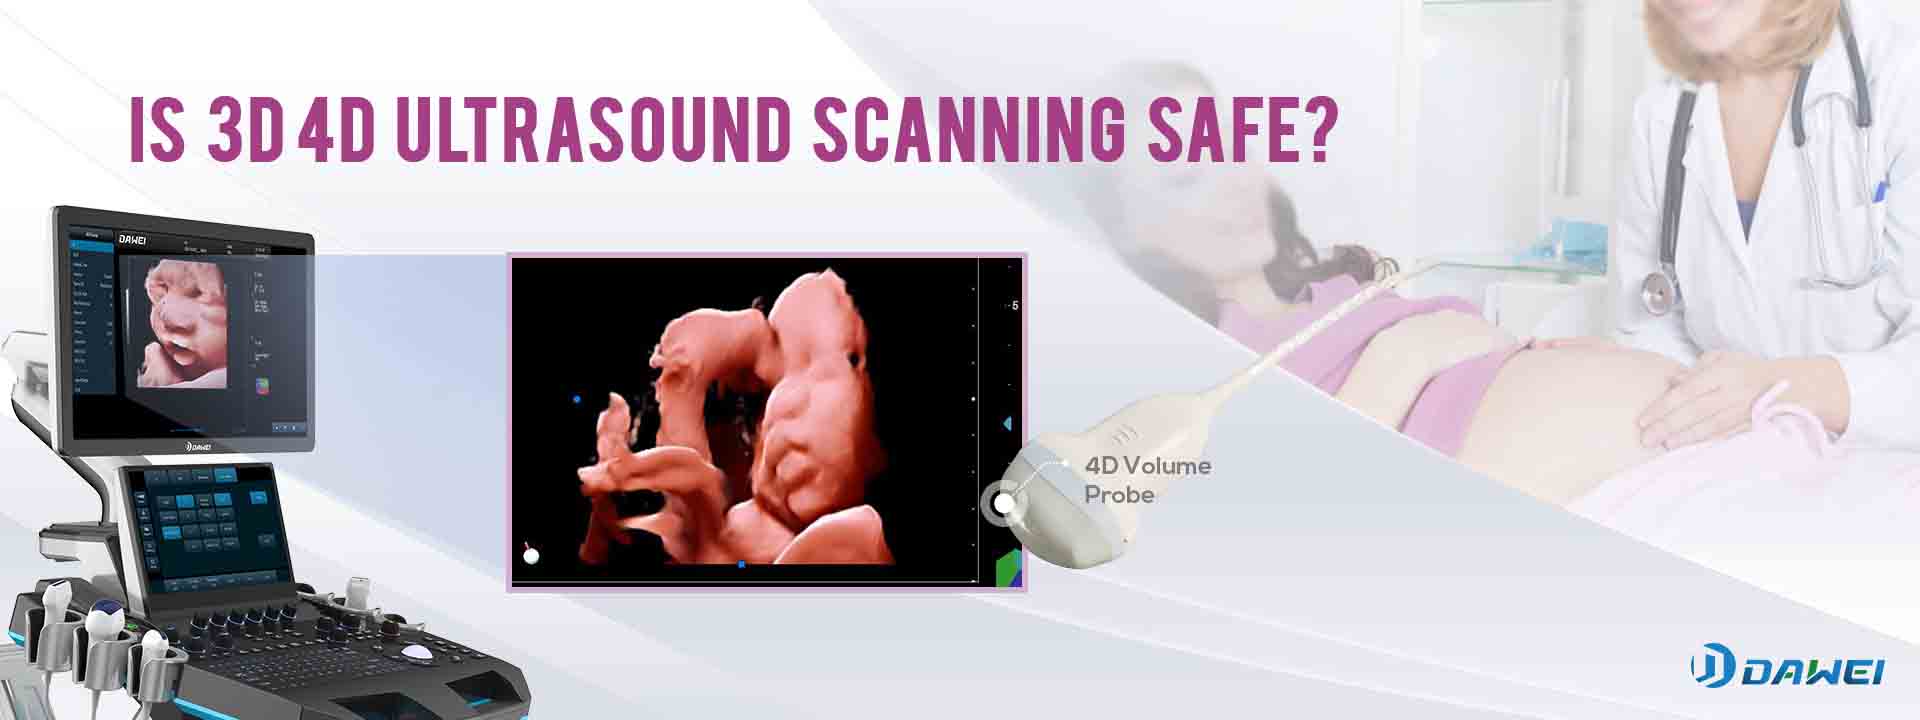 3D/4D ultrazvučno skeniranje koristi isti ultrazvuk za stvaranje bolje slike putem softverski poboljšanog snimanja.